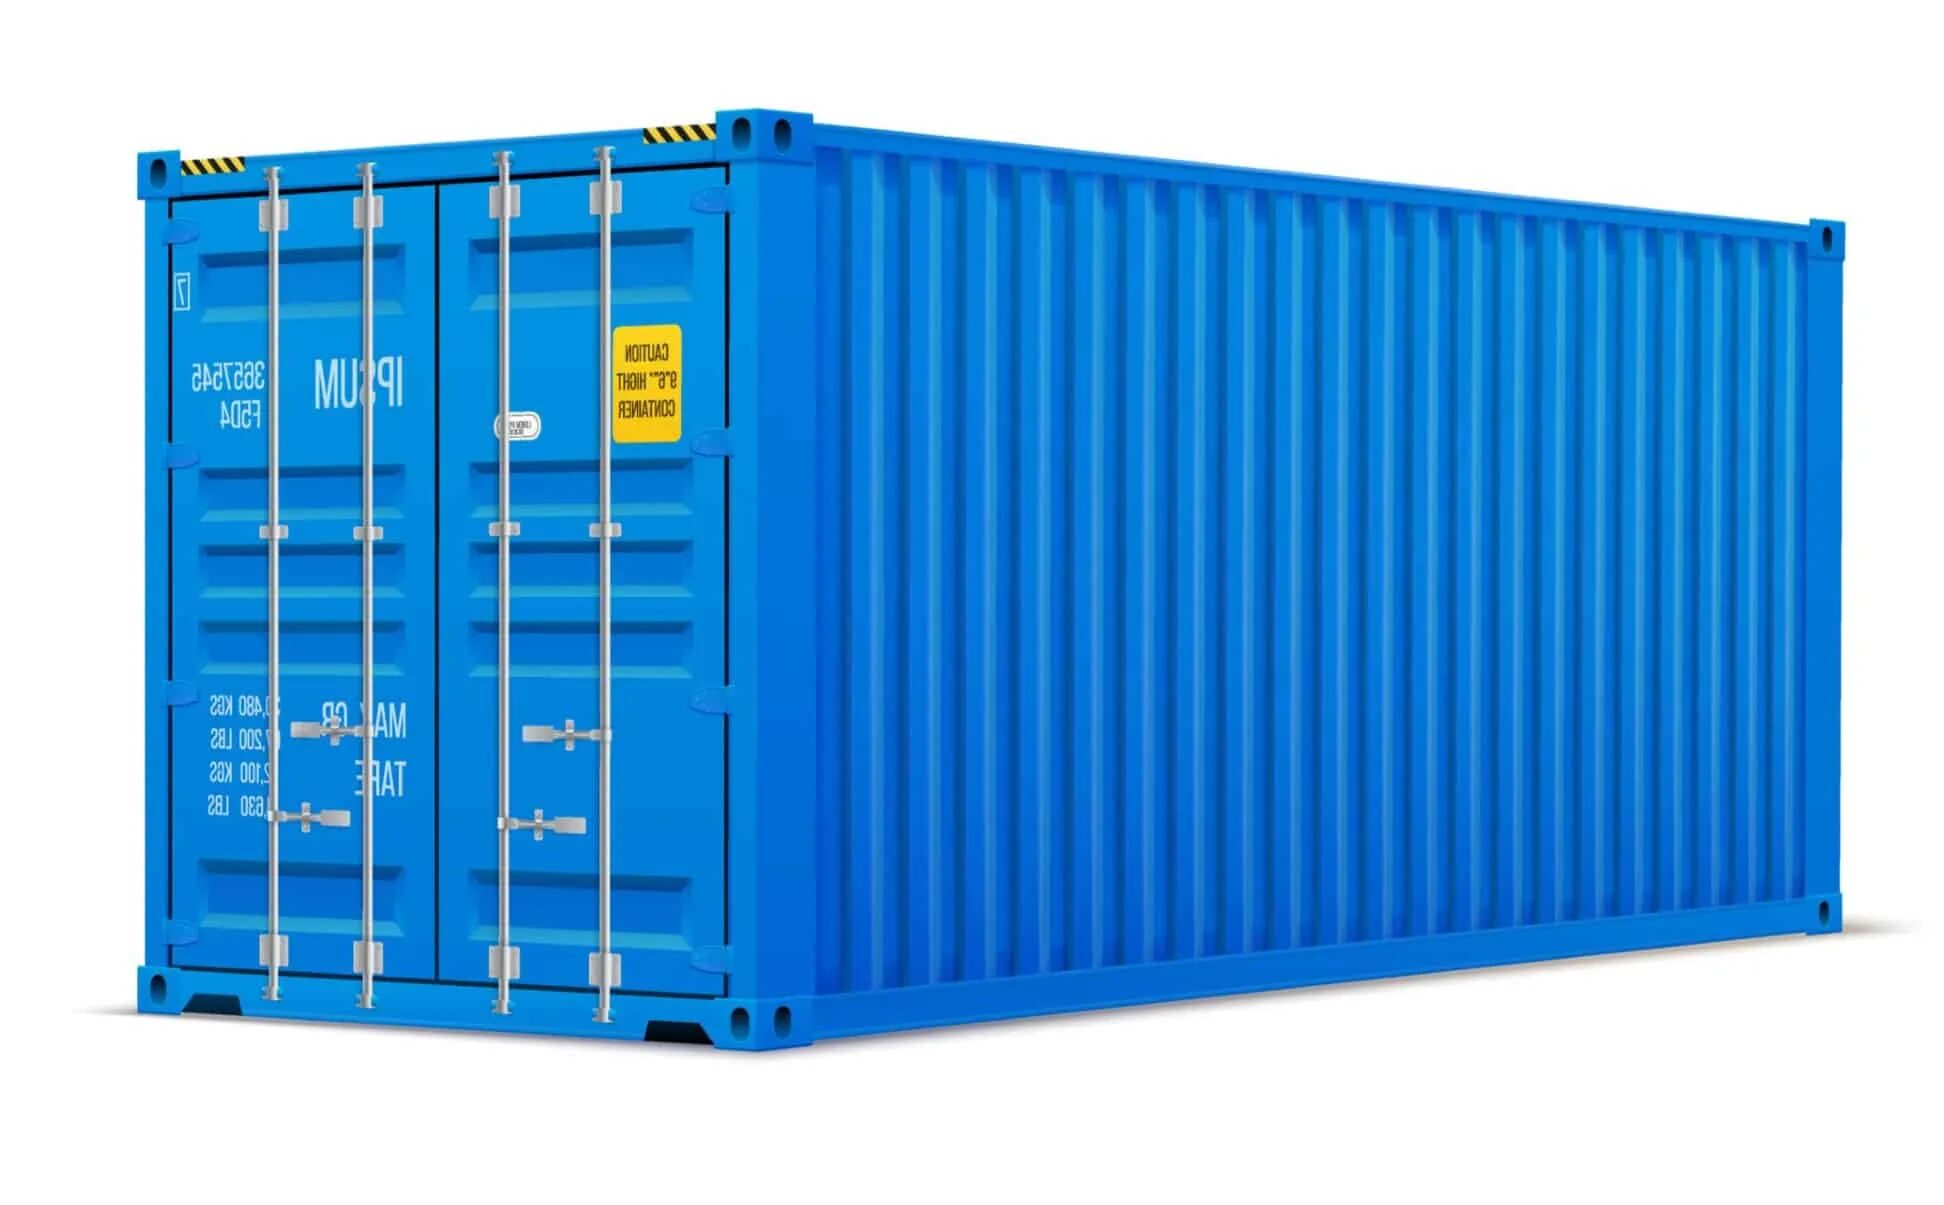 Морской контейнер новосибирск. Контейнер 20dc новый. 40-Ка футовый High Cube контейнер увеличенной вместимости. Морской контейнер 40 футов HC, DC. Контейнер 20dc hlxu3340109.